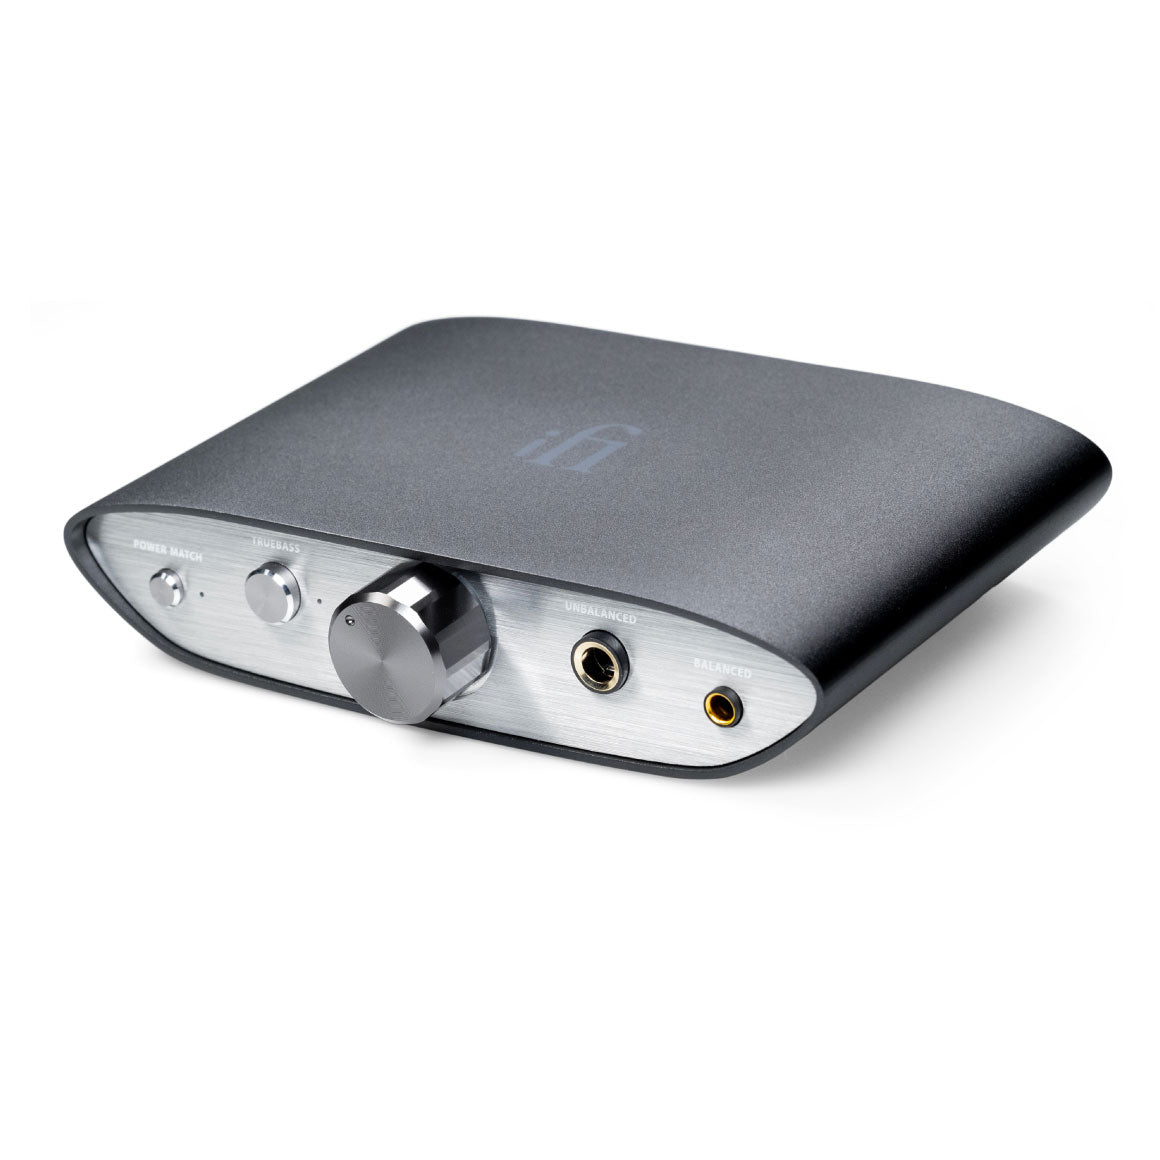 Headphone-Zone-iFi Audio-ZEN DAC V2